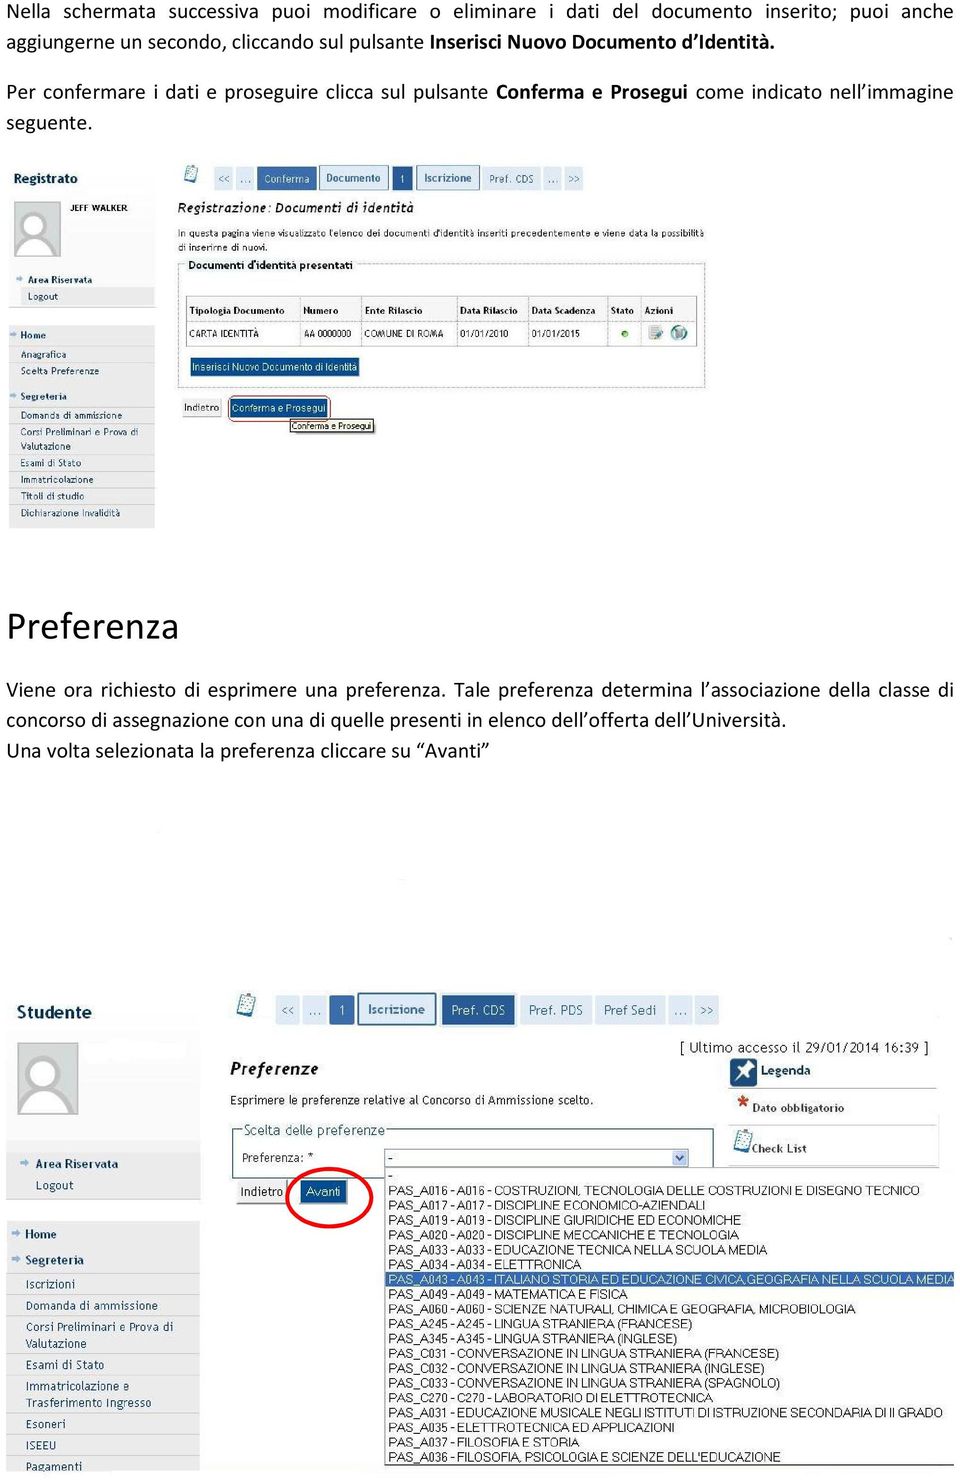 Per confermare i dati e proseguire clicca sul pulsante Conferma e Prosegui come indicato nell immagine seguente.